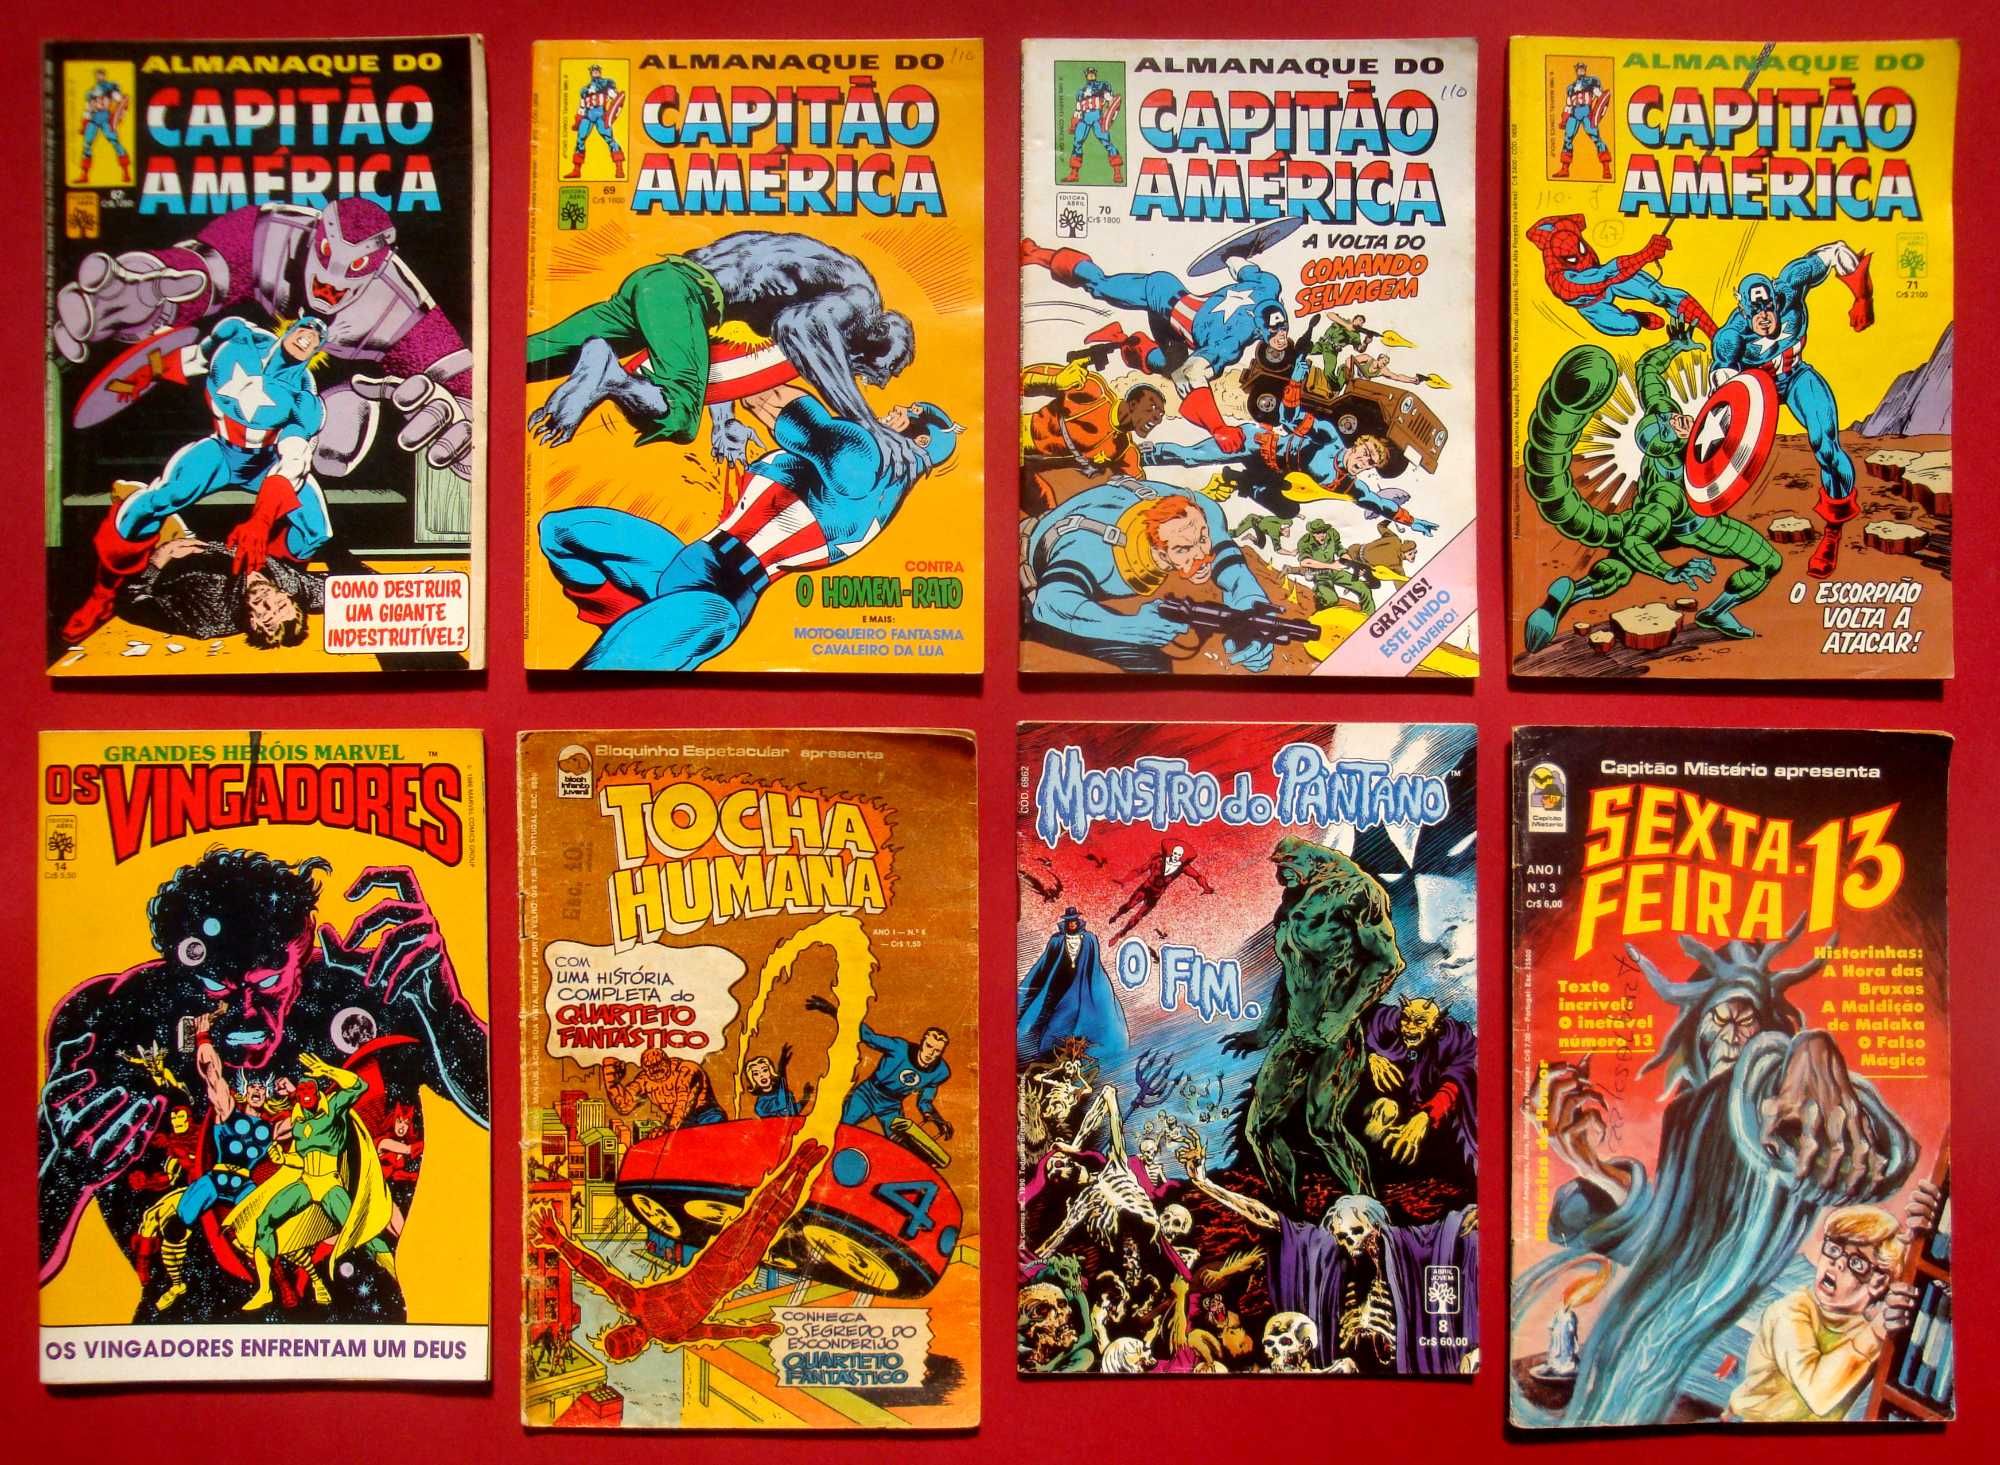 Reliquias BD MARVEL DC Comics Almanaques Revistas Novels Single Issues